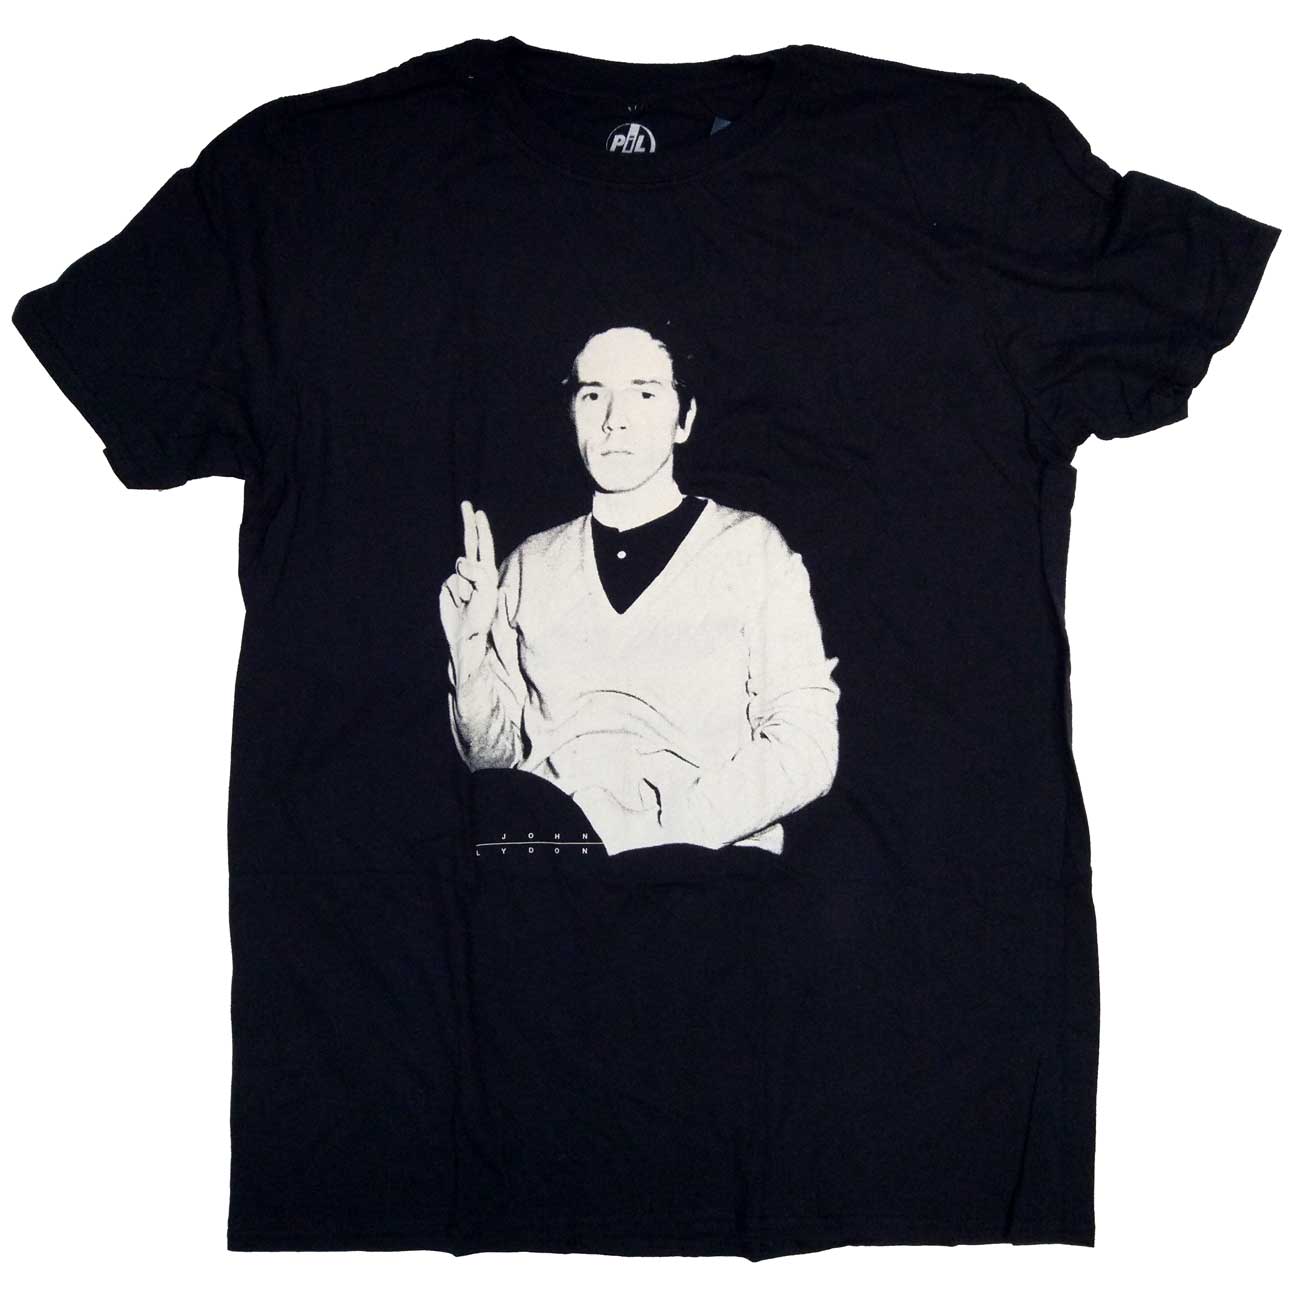 PIL Public Image Limited T Shirt - John Lydon Portrait 100% Official